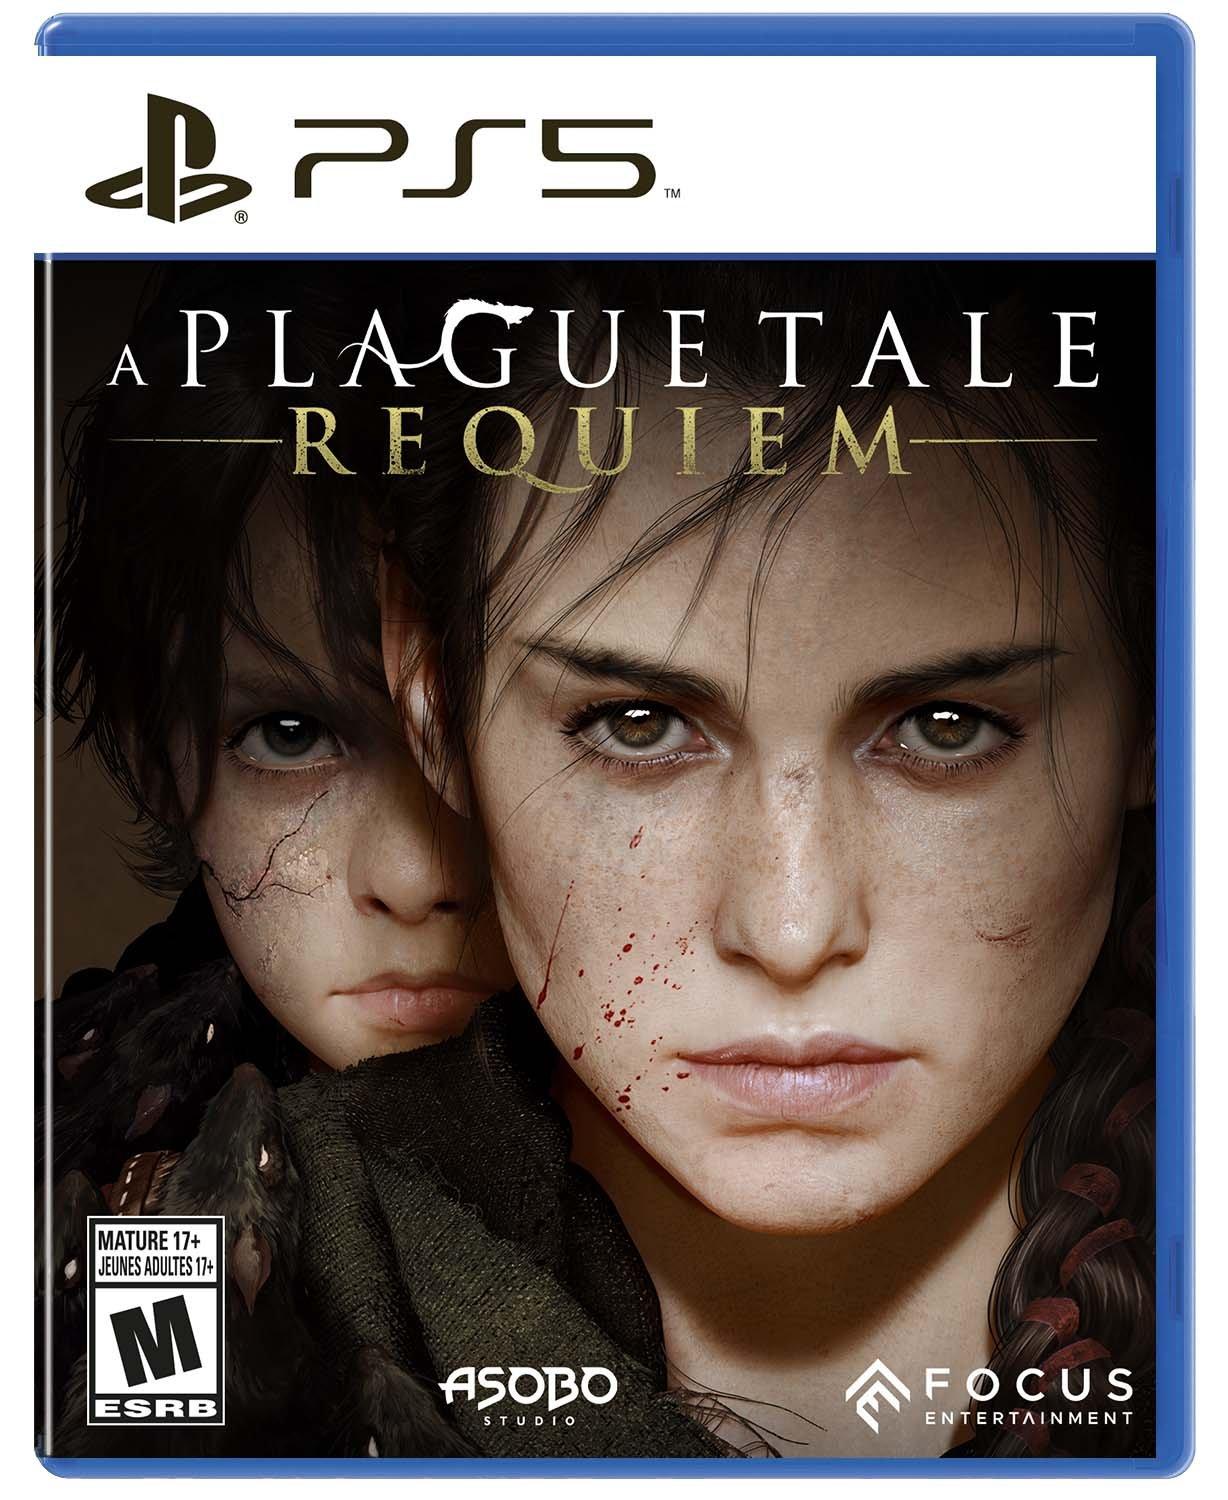 A Plague Tale: Requiem - Xbox Series X, Xbox Series X